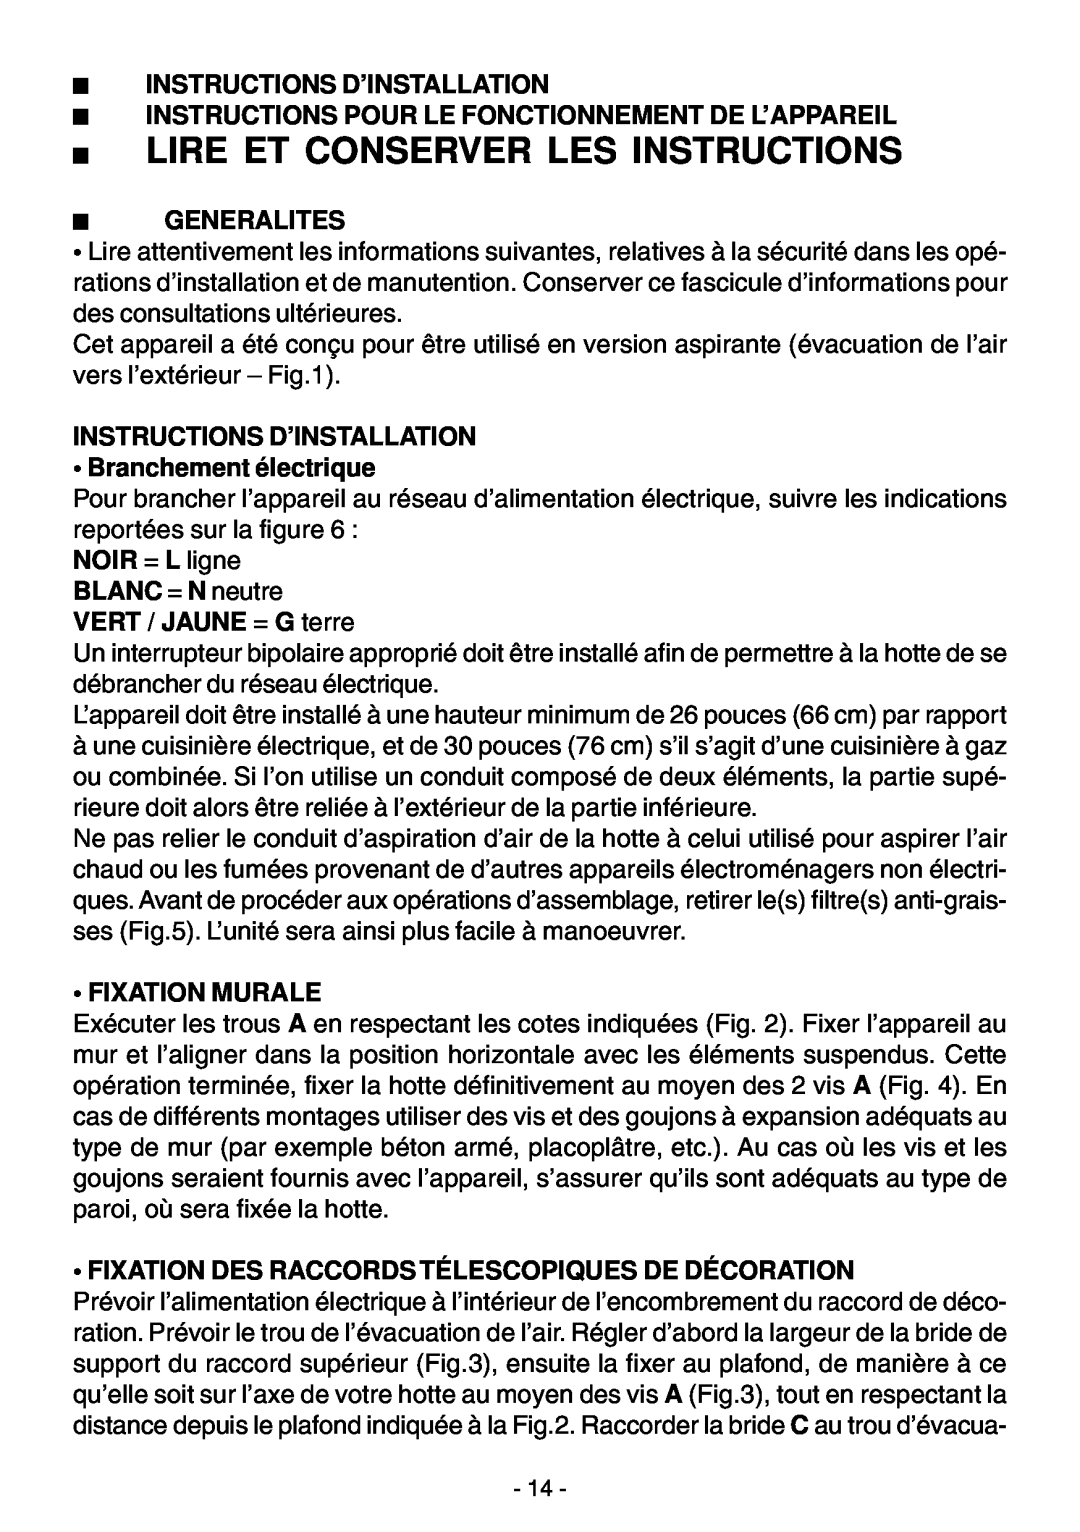 Elitair ZN-36 Instructions Pour Le Fonctionnement De L’Appareil, Generalites, Fixation Murale, Instructions D’Installation 